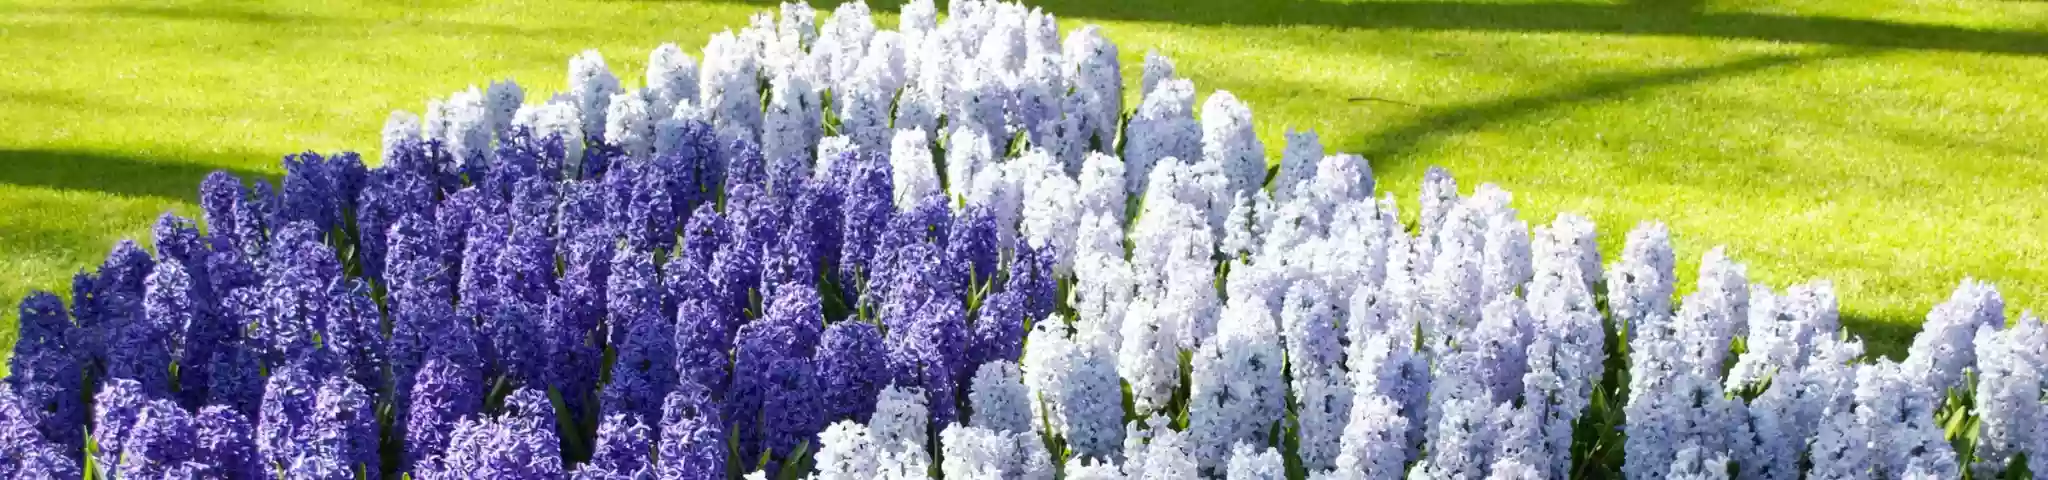 Hyacinth Flower in Garden 